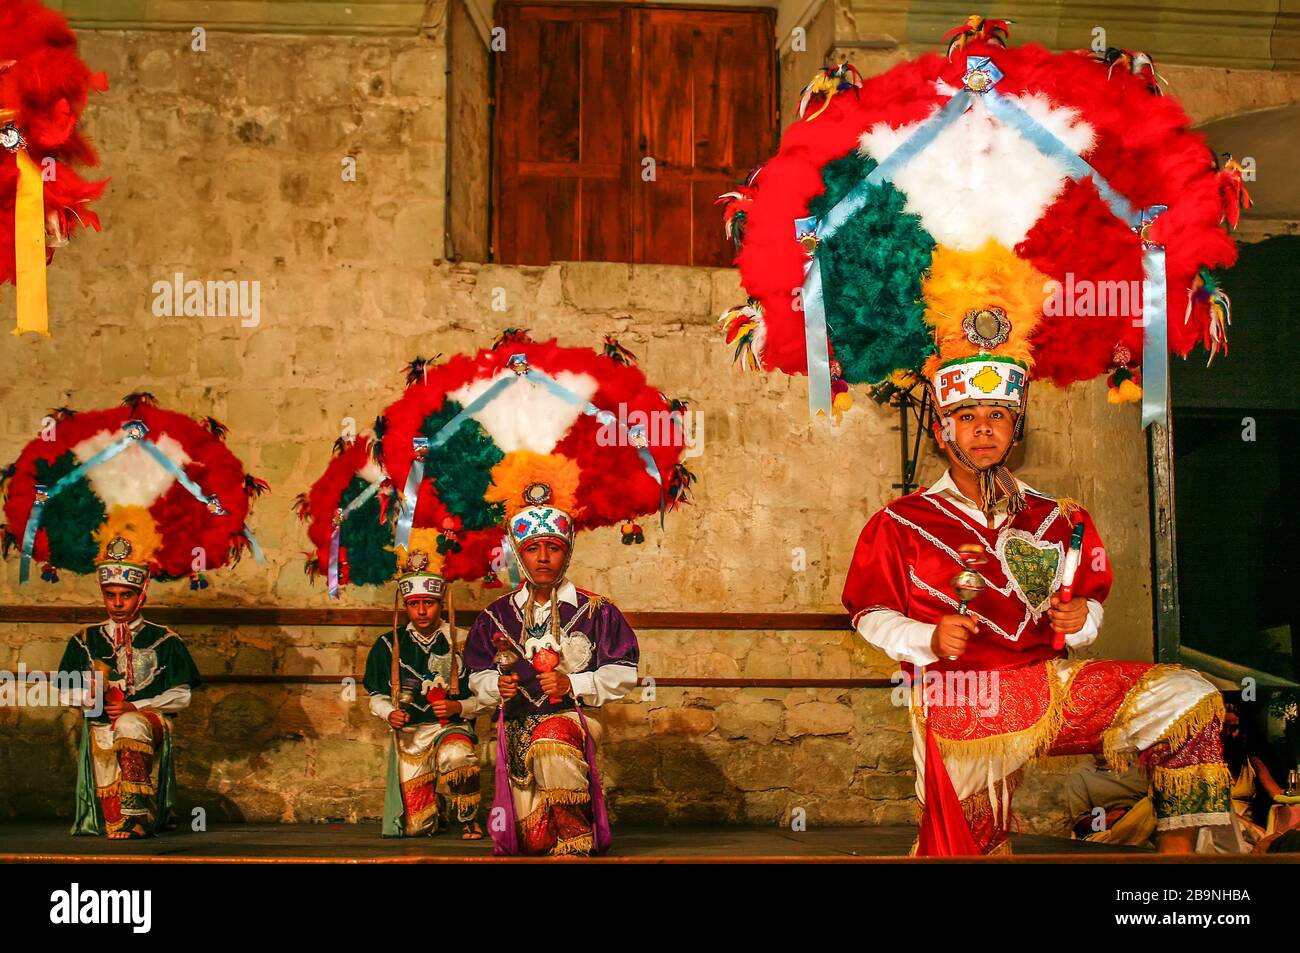 Des danseurs traditionnels se produisent au Mexique Banque D'Images